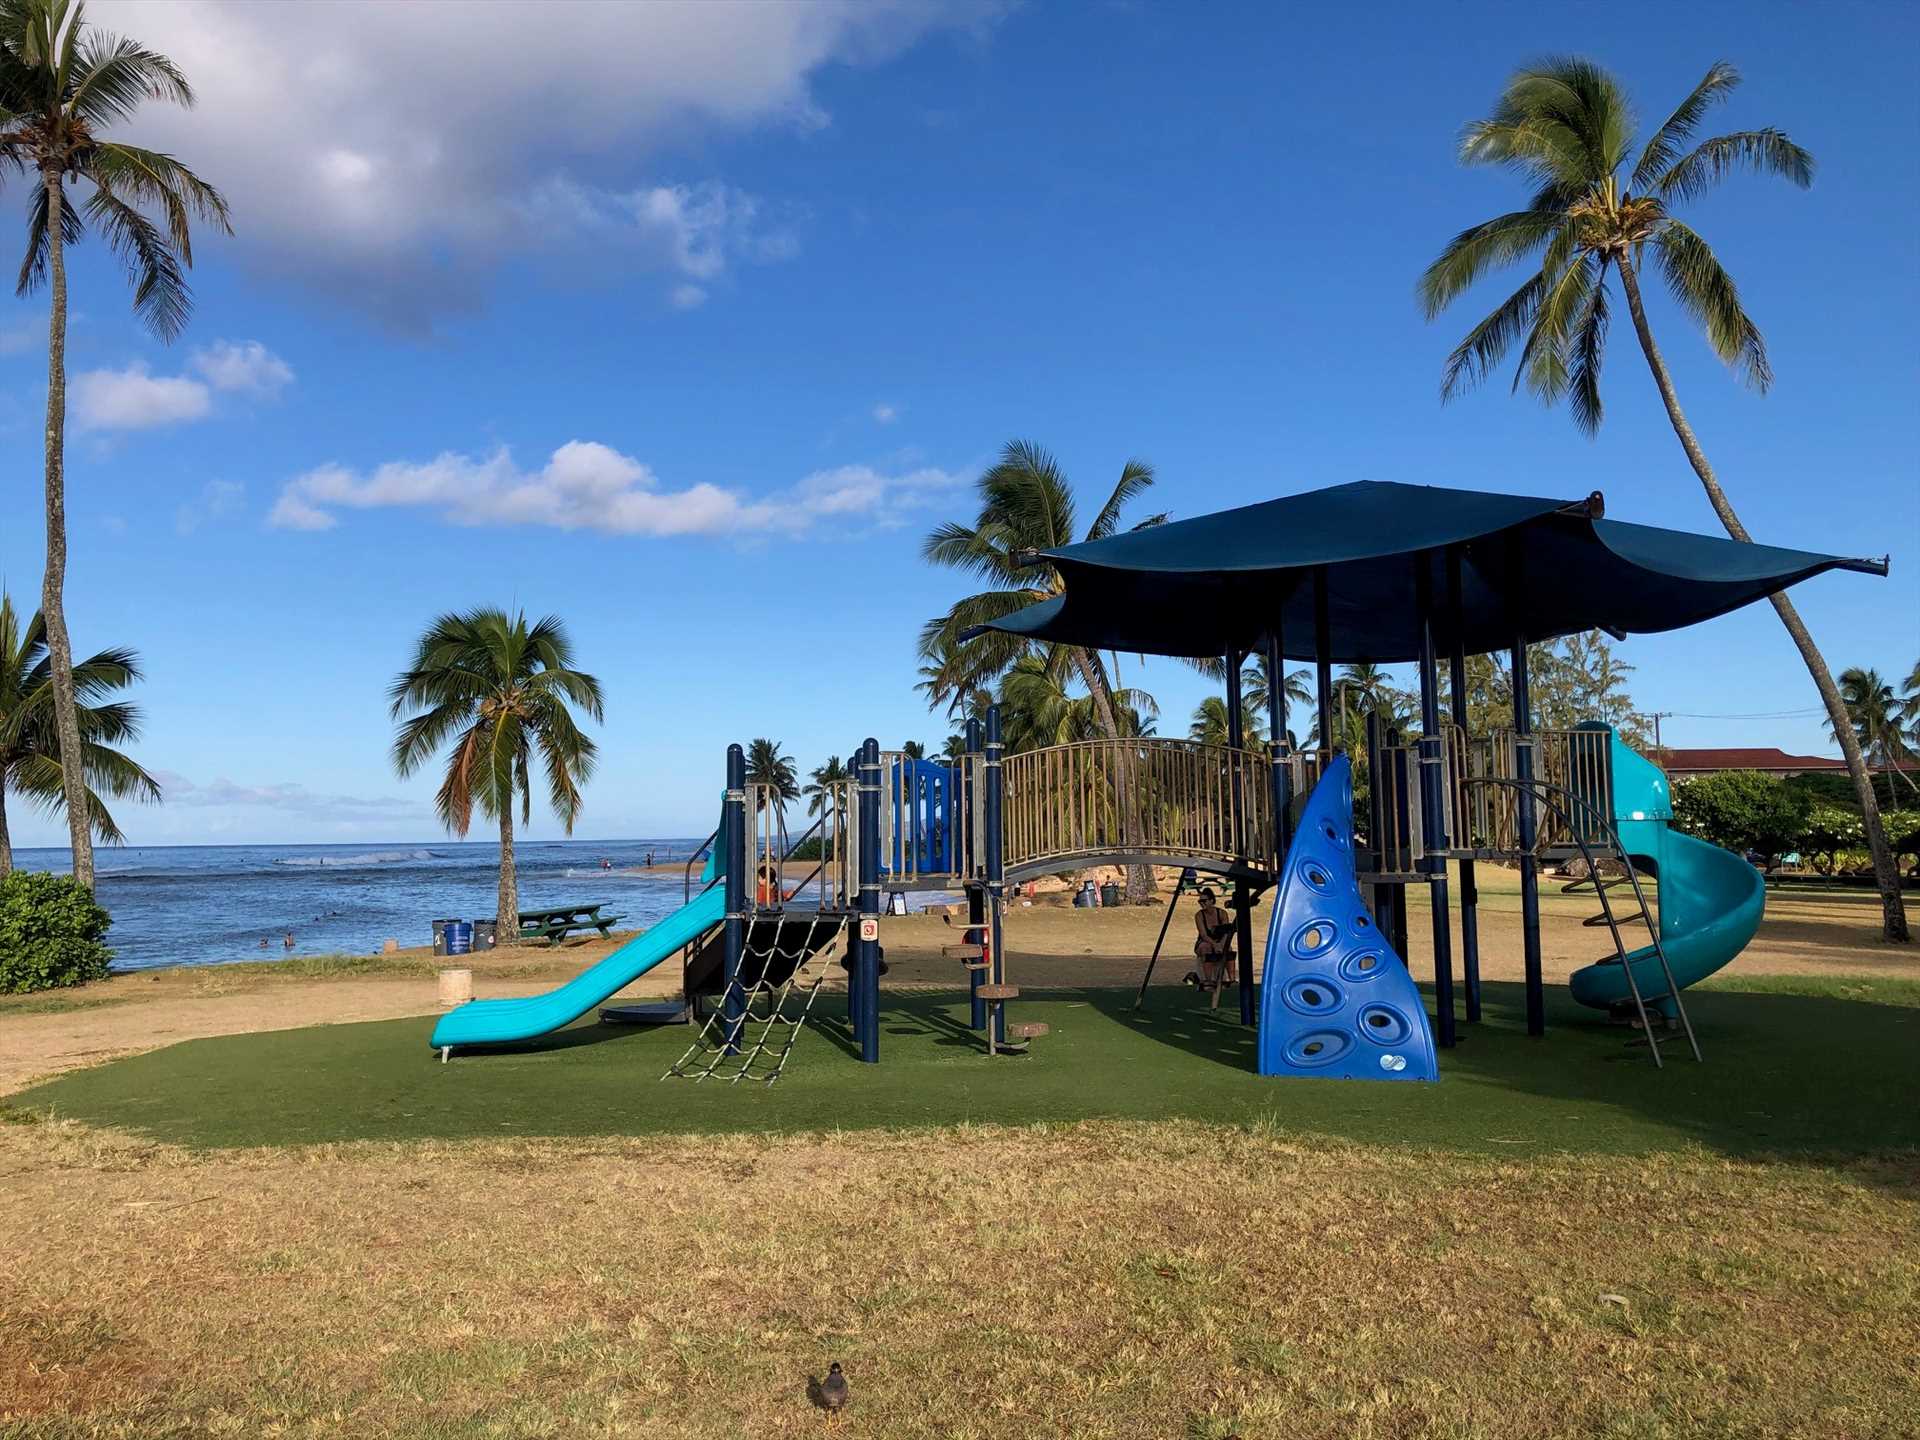 Poipu Beach Playground Equipment